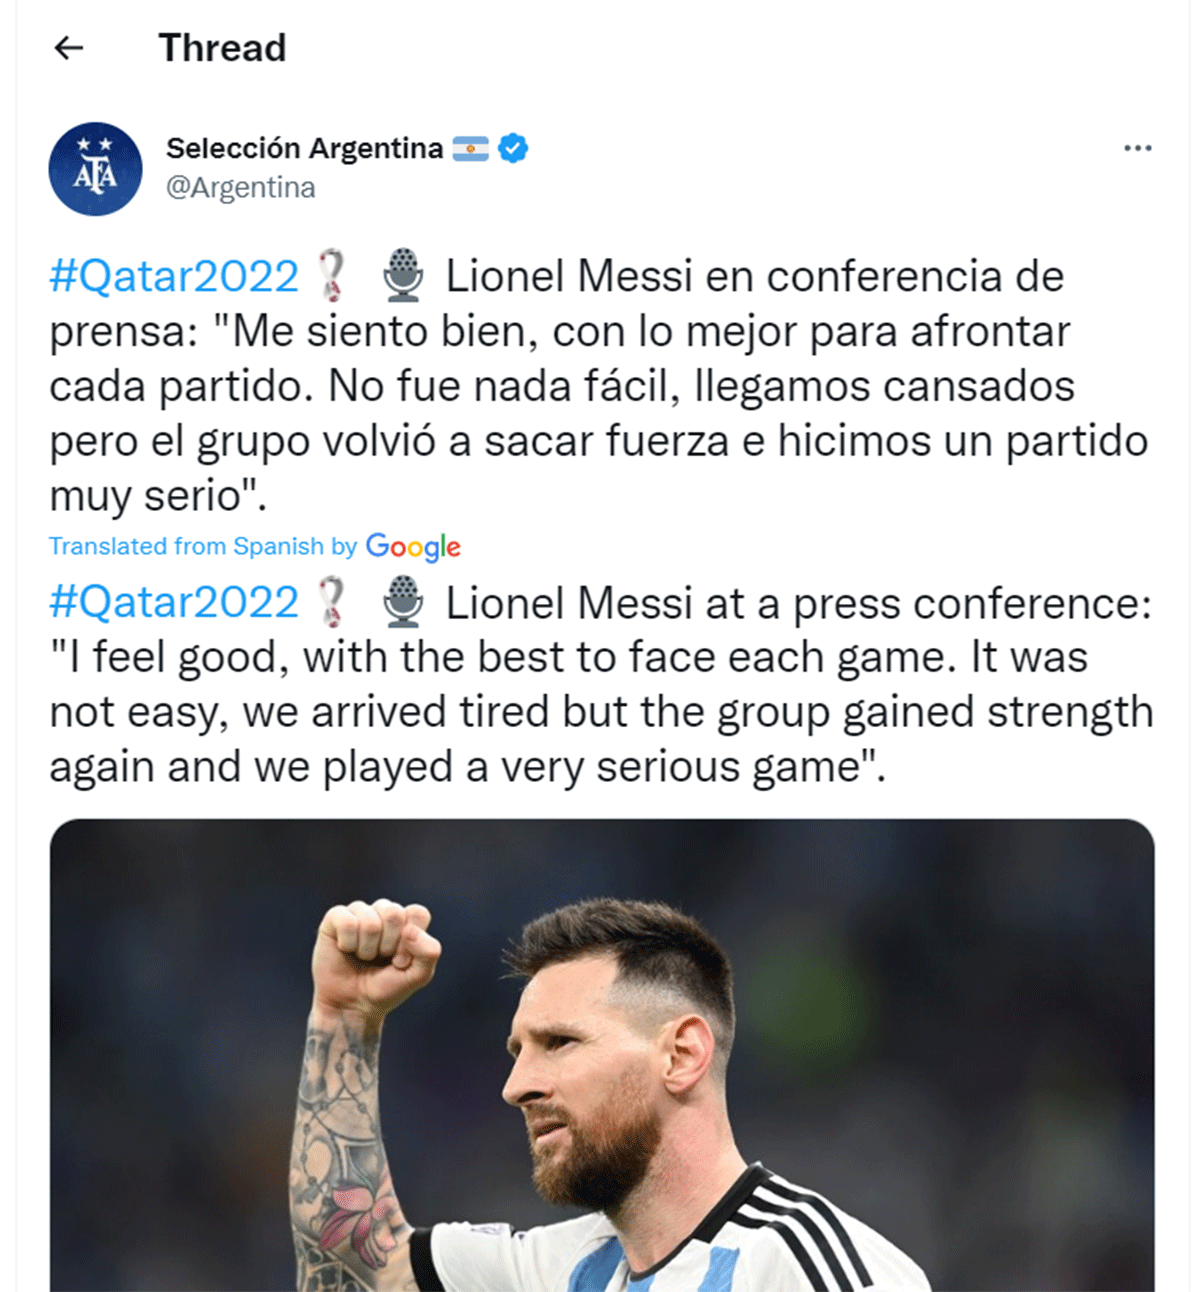 Messi at the press con